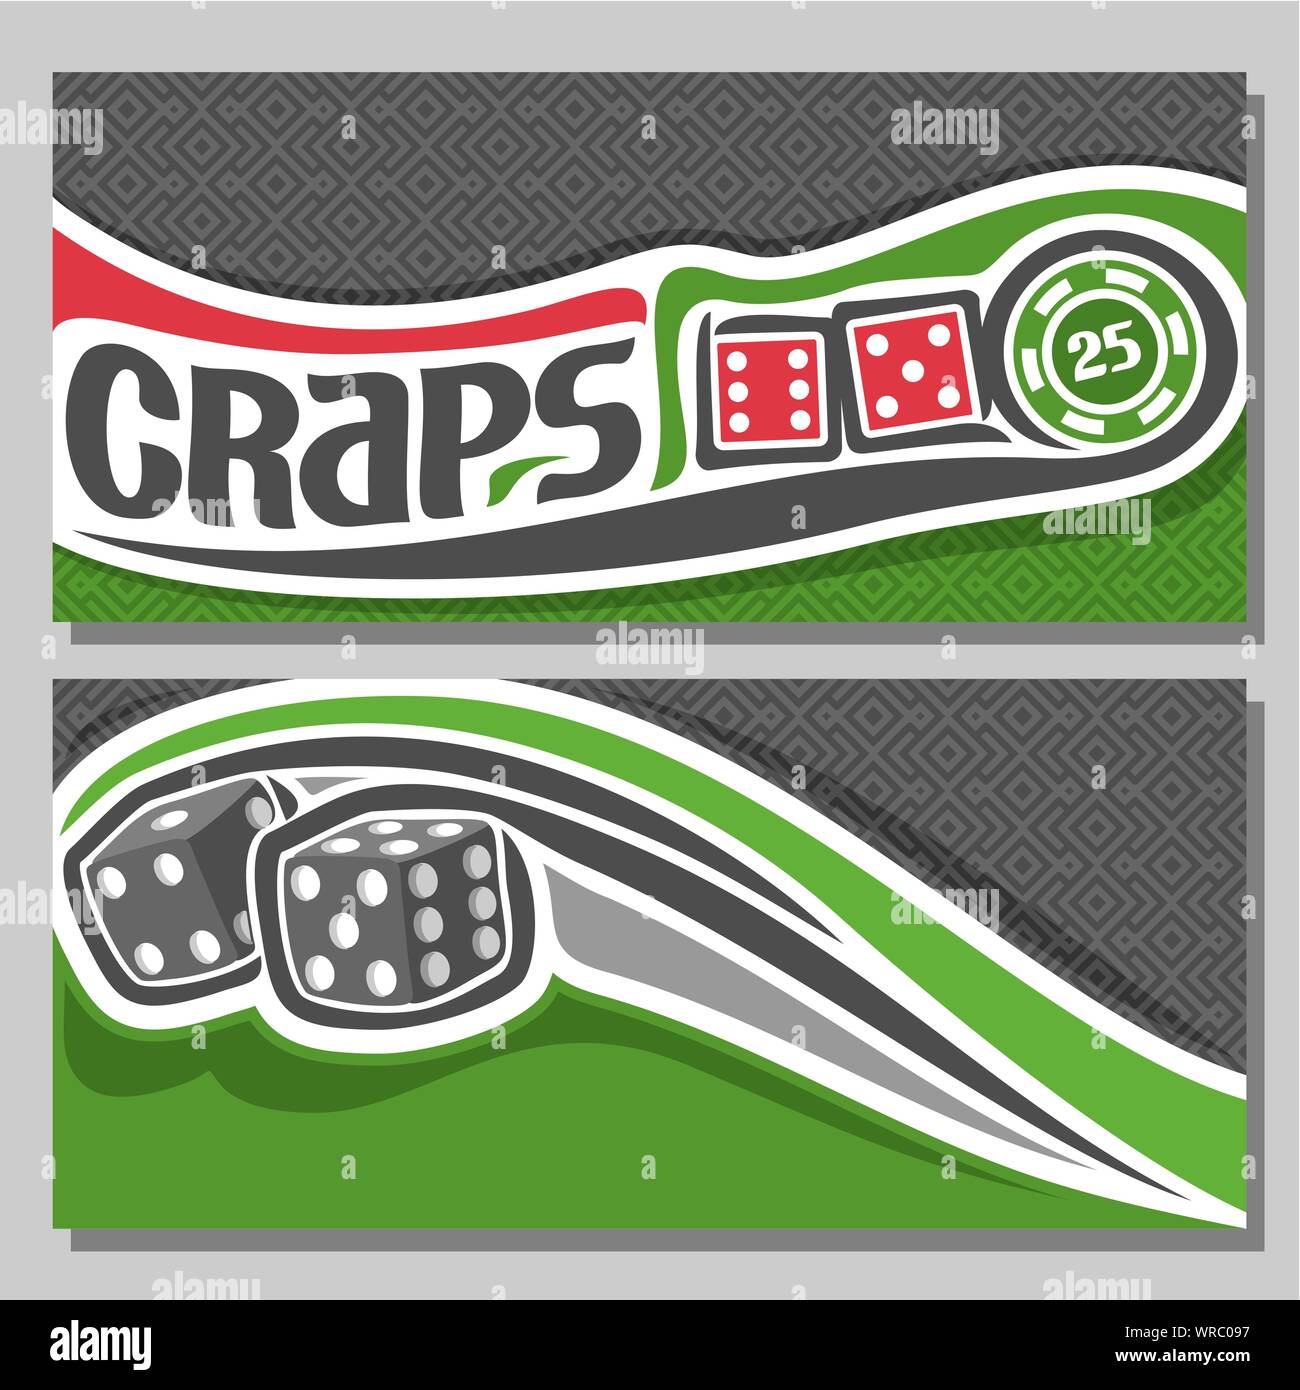 Banner di vettore di Craps gamble, 2 dadi rossi cubi battenti sulla traiettoria su sfondo di texture. Illustrazione Vettoriale